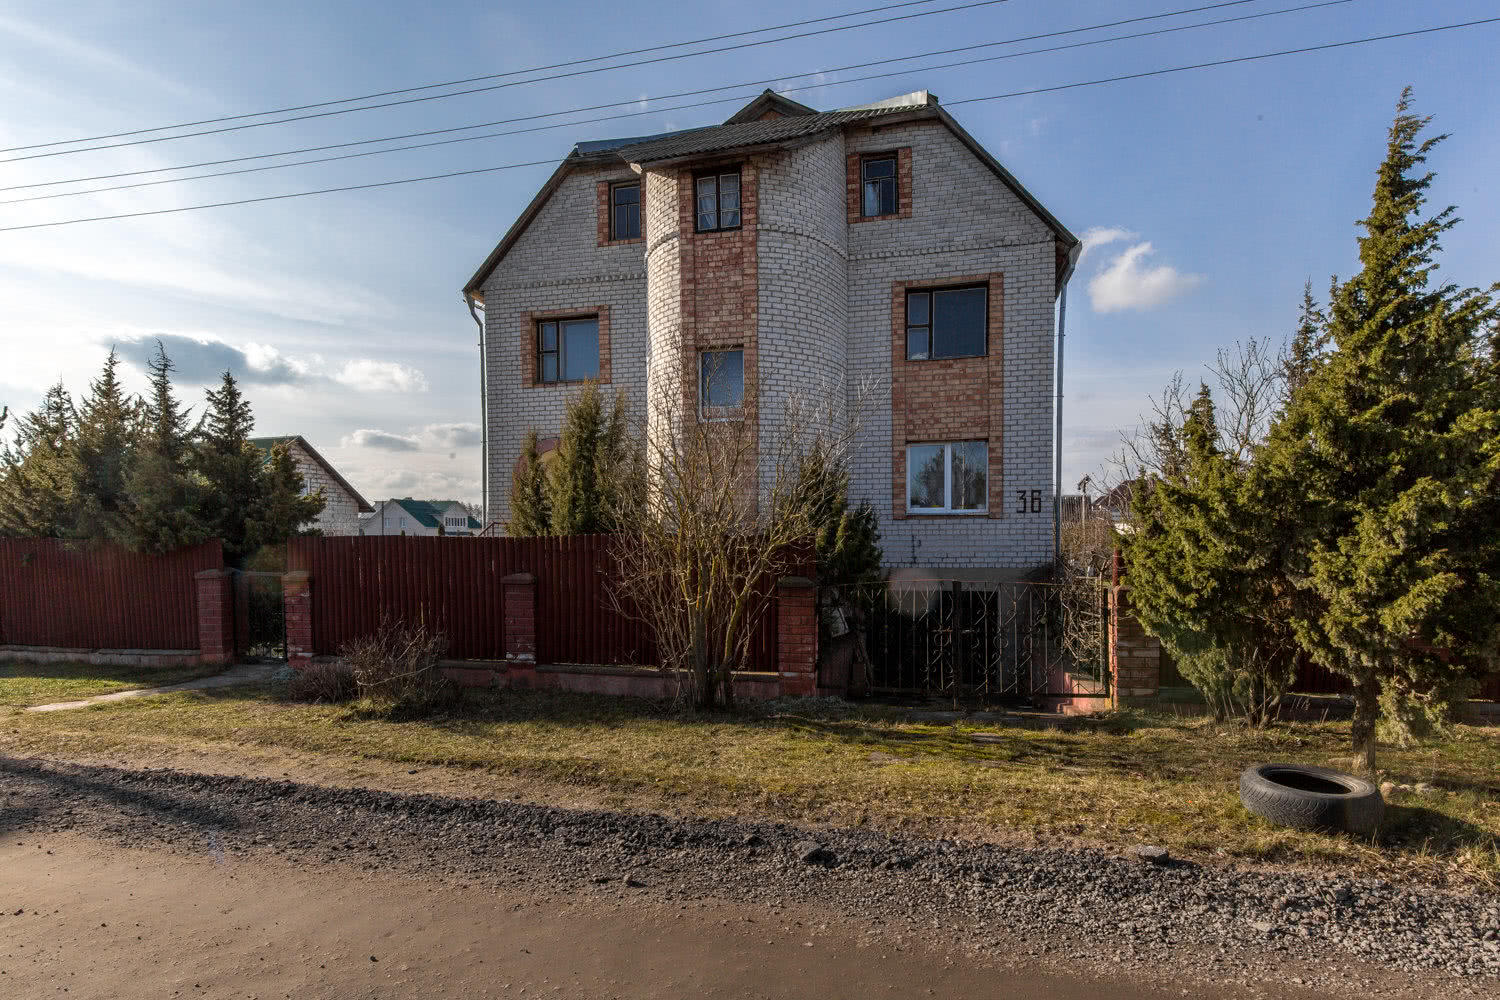 Продать 3-этажный дом в Сморгони, Гродненская область ул. Молодёжная, 54900USD - фото 1